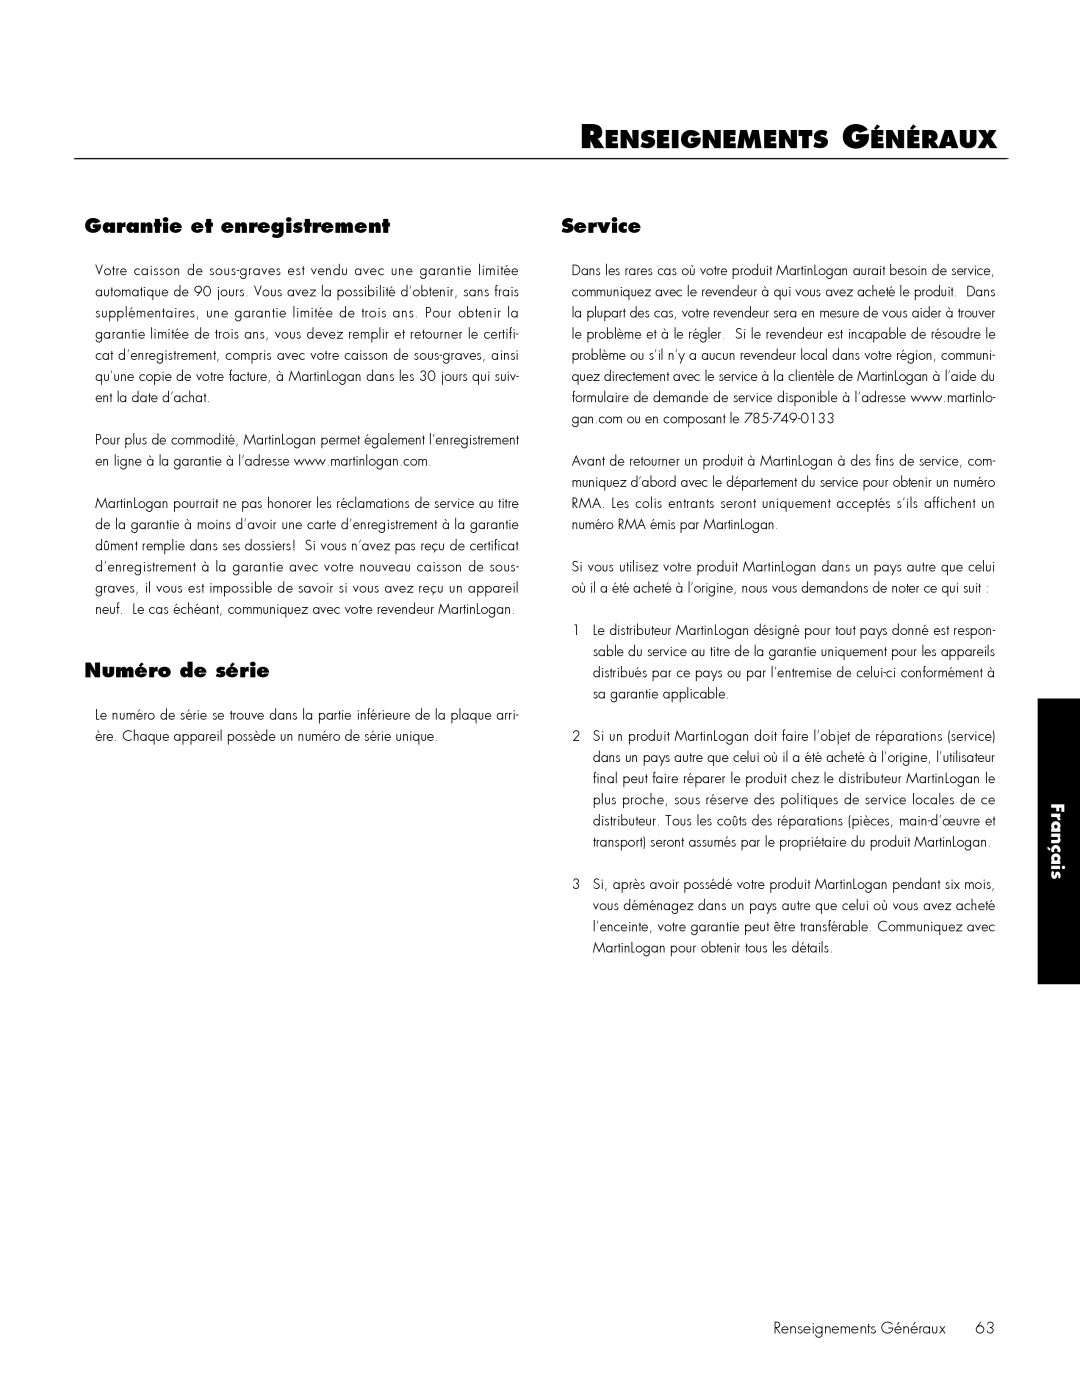 MartinLogan 212, 210 user manual Renseignements Généraux, Garantie et enregistrement, Service, Numéro de série, Français 